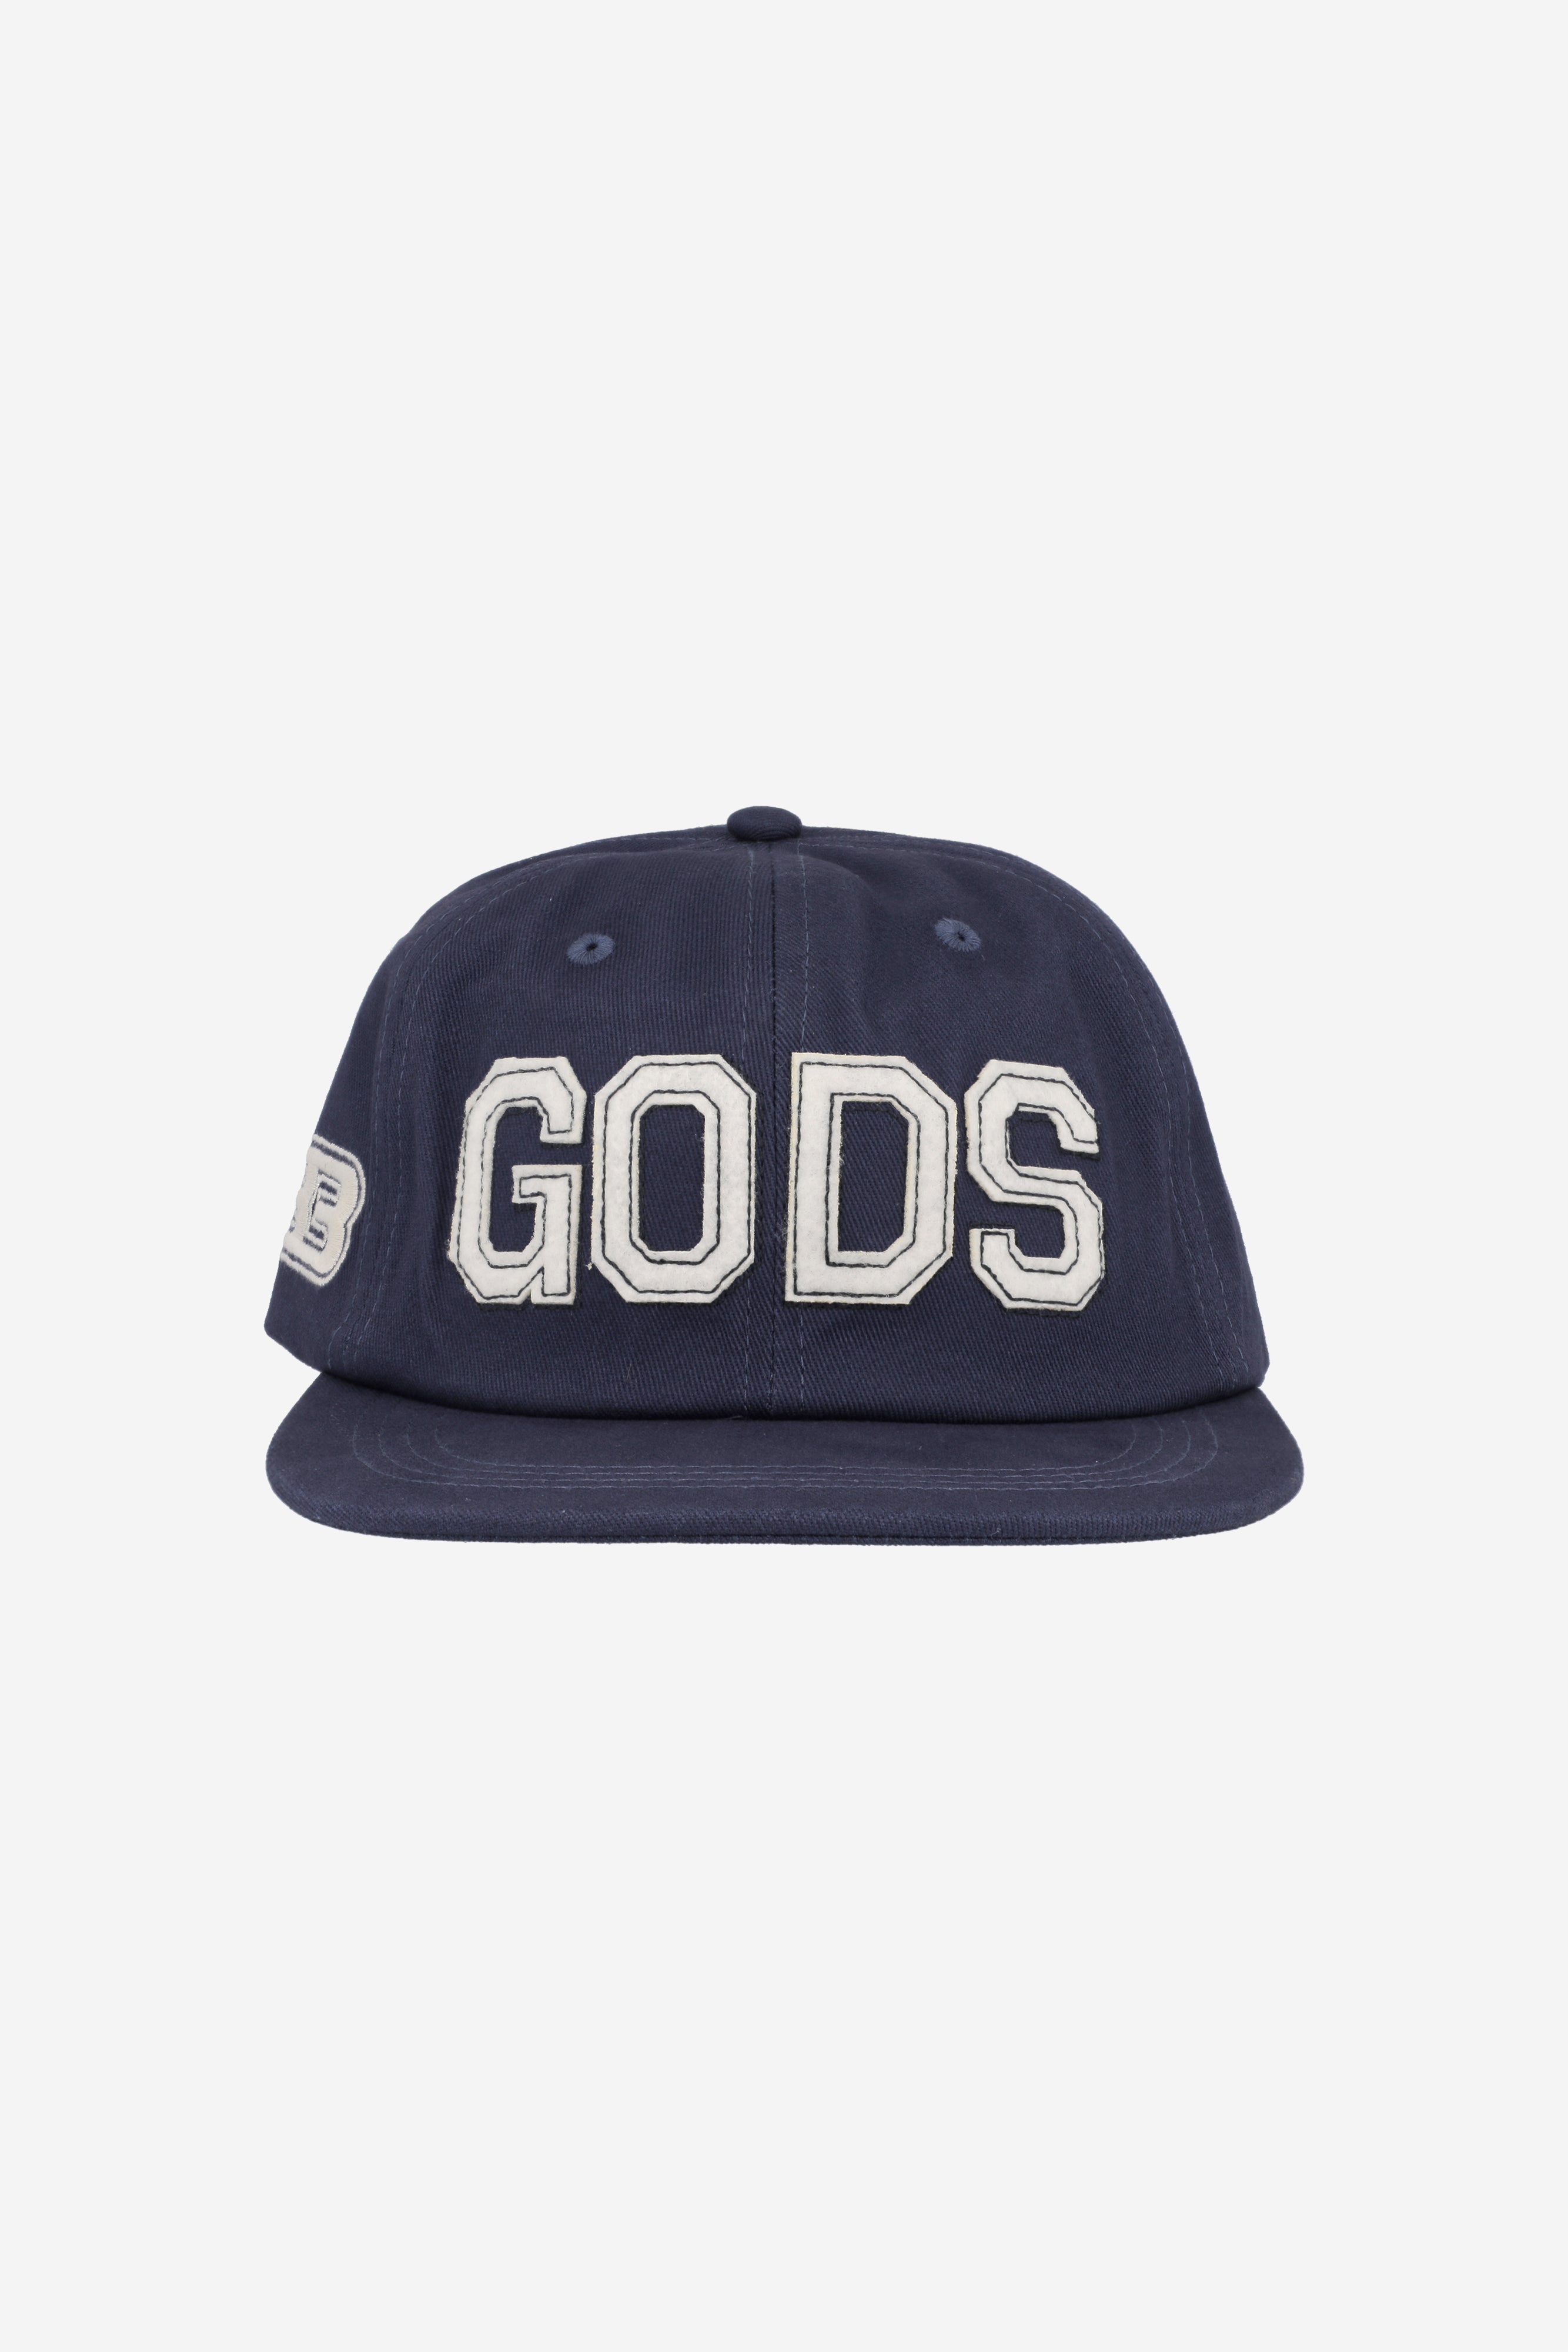 GODS CAP NAVY